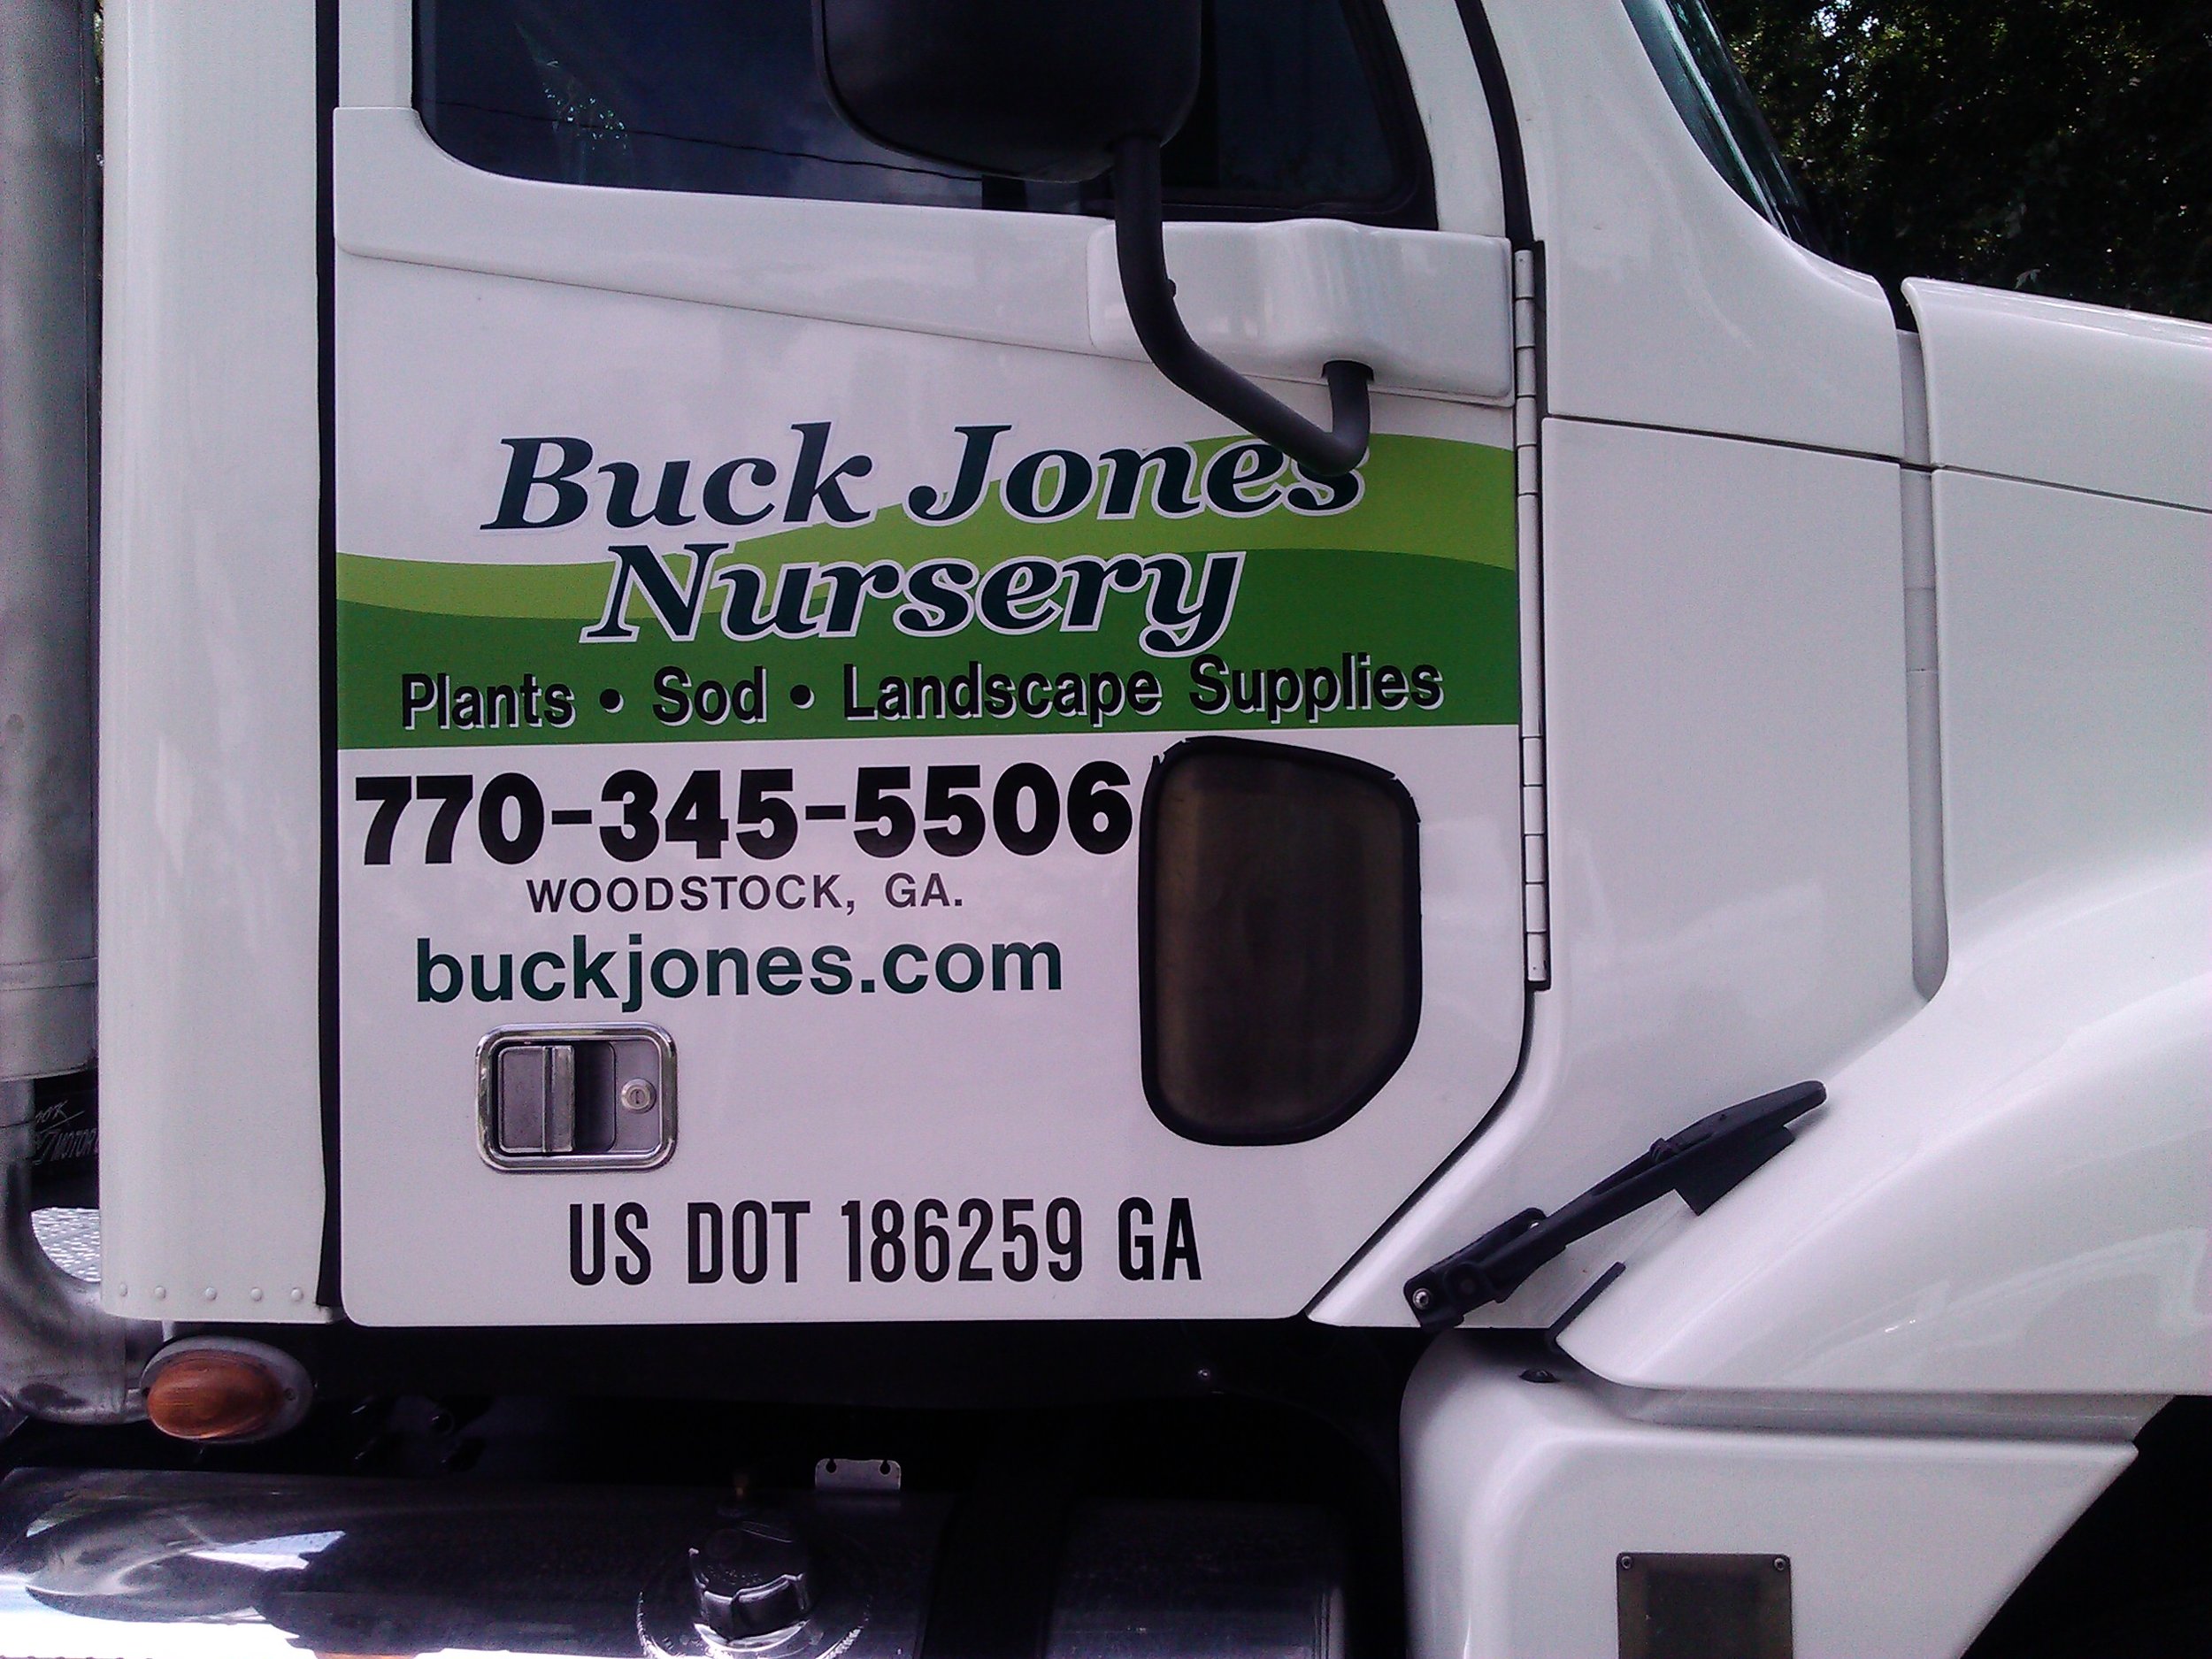 buck jones nursey.jpg